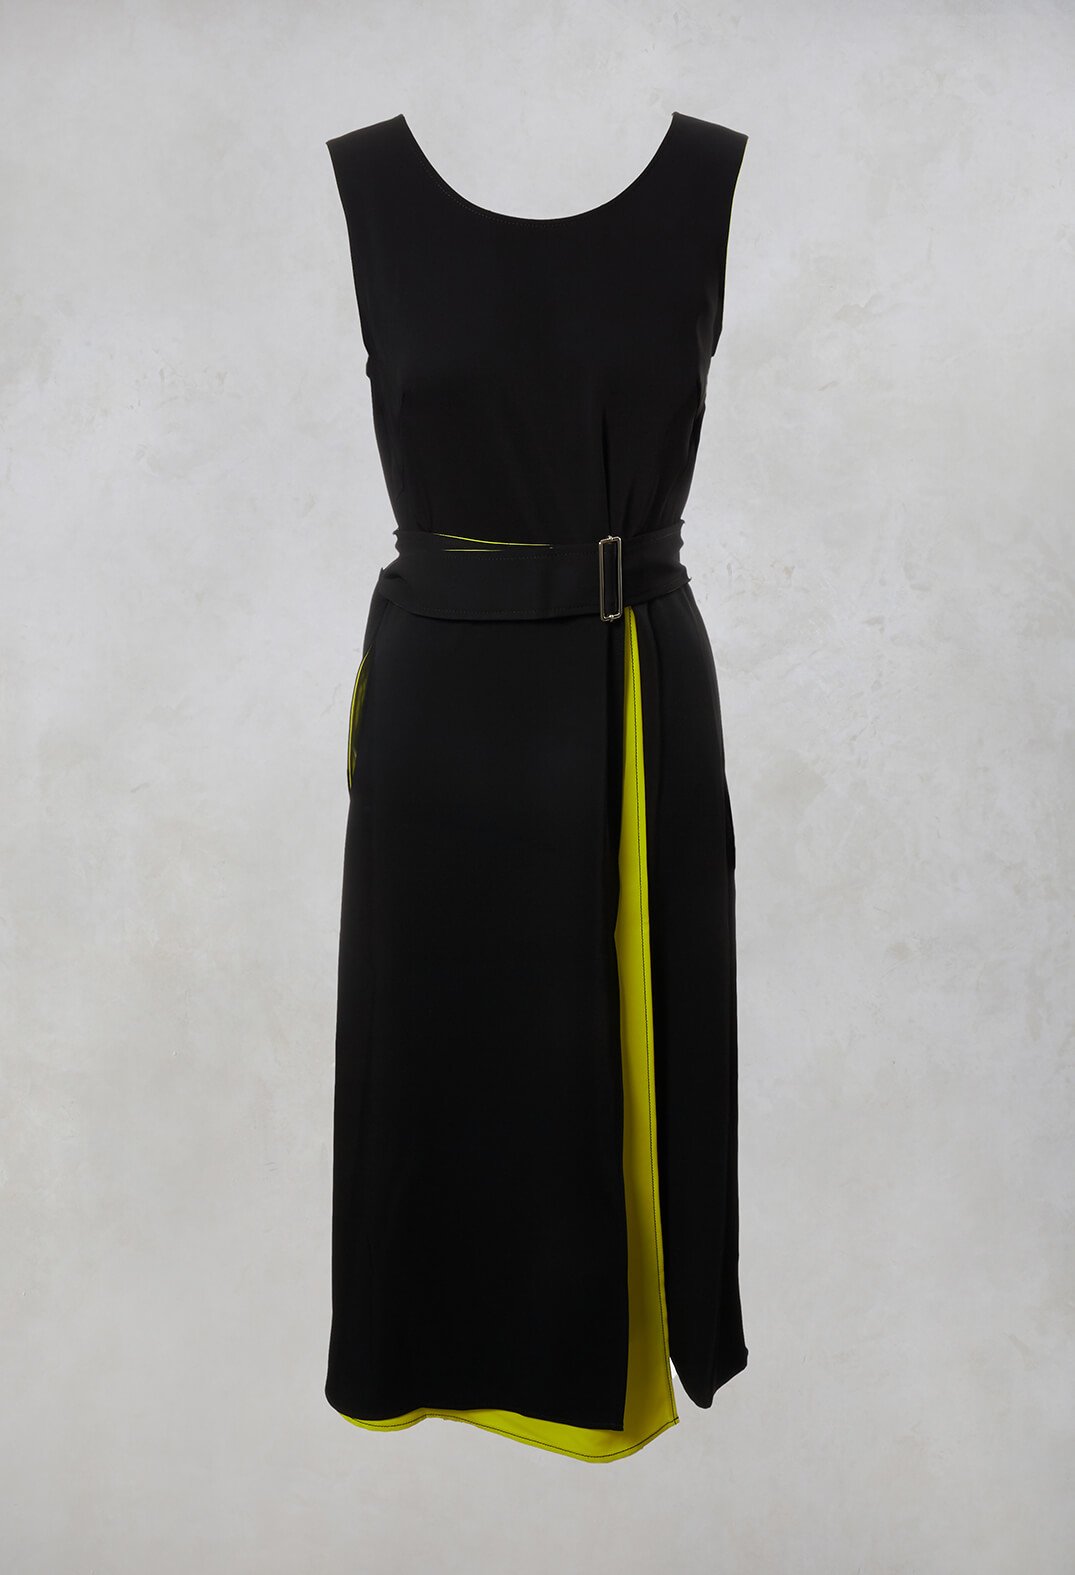 yellow fluorescent sleeveless dress with waist belt